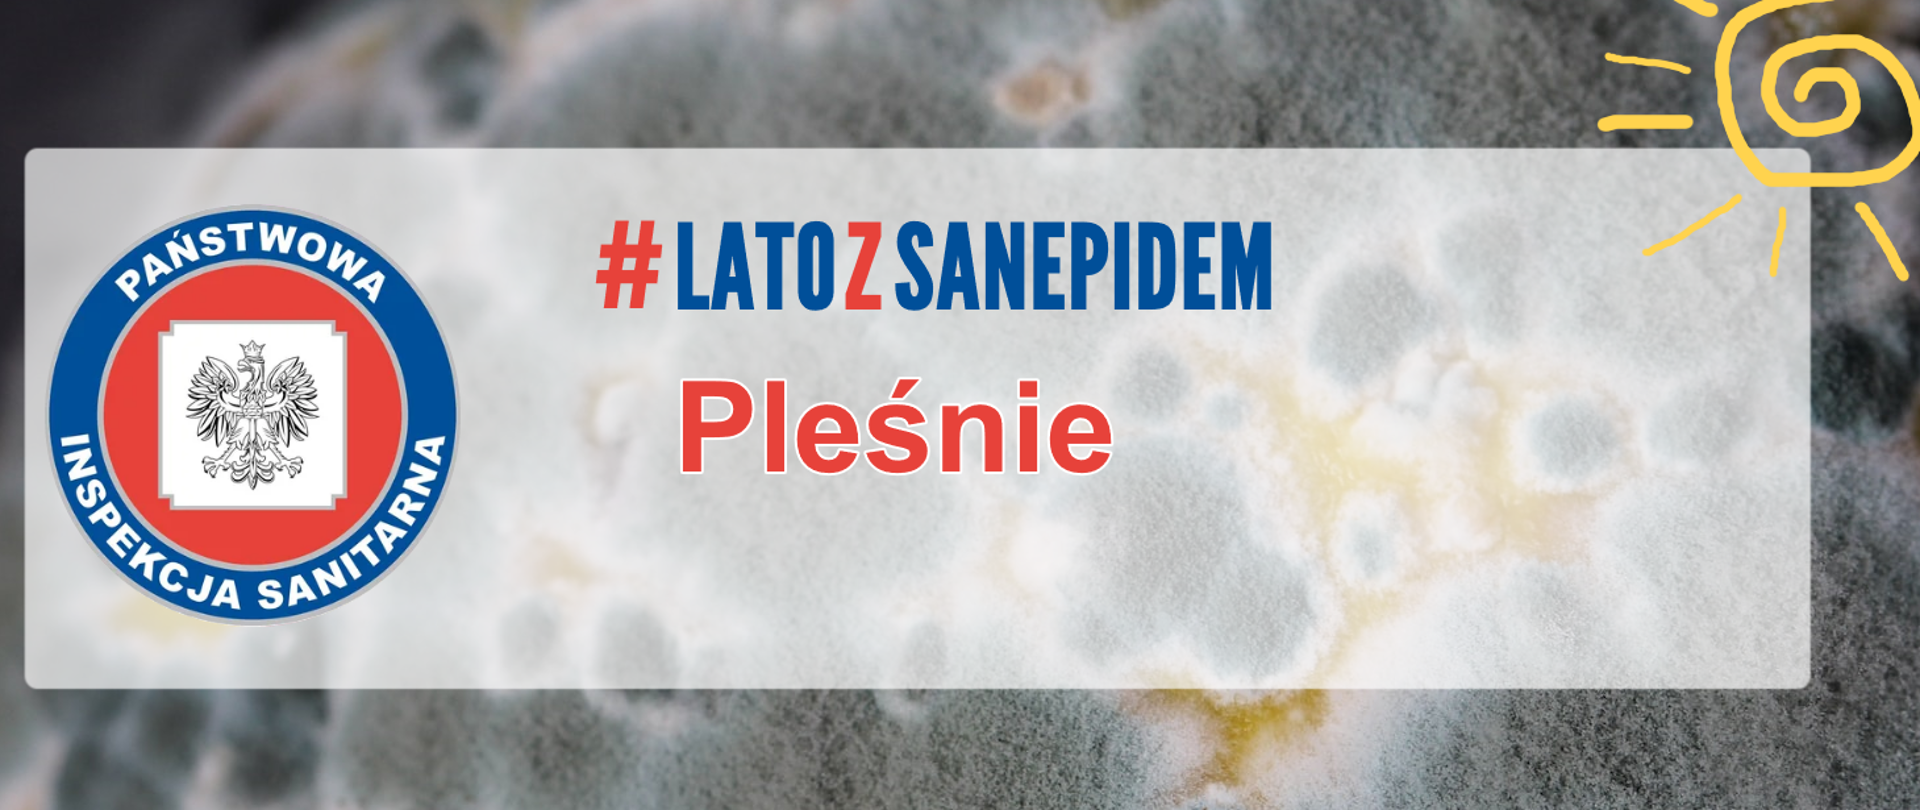 Grafika przedstawia zdjęcie pleśni, poniżej znajduje się napis : # latozsanepidem – pleśń , obok napisu logo Inspekcji Sanitarnej